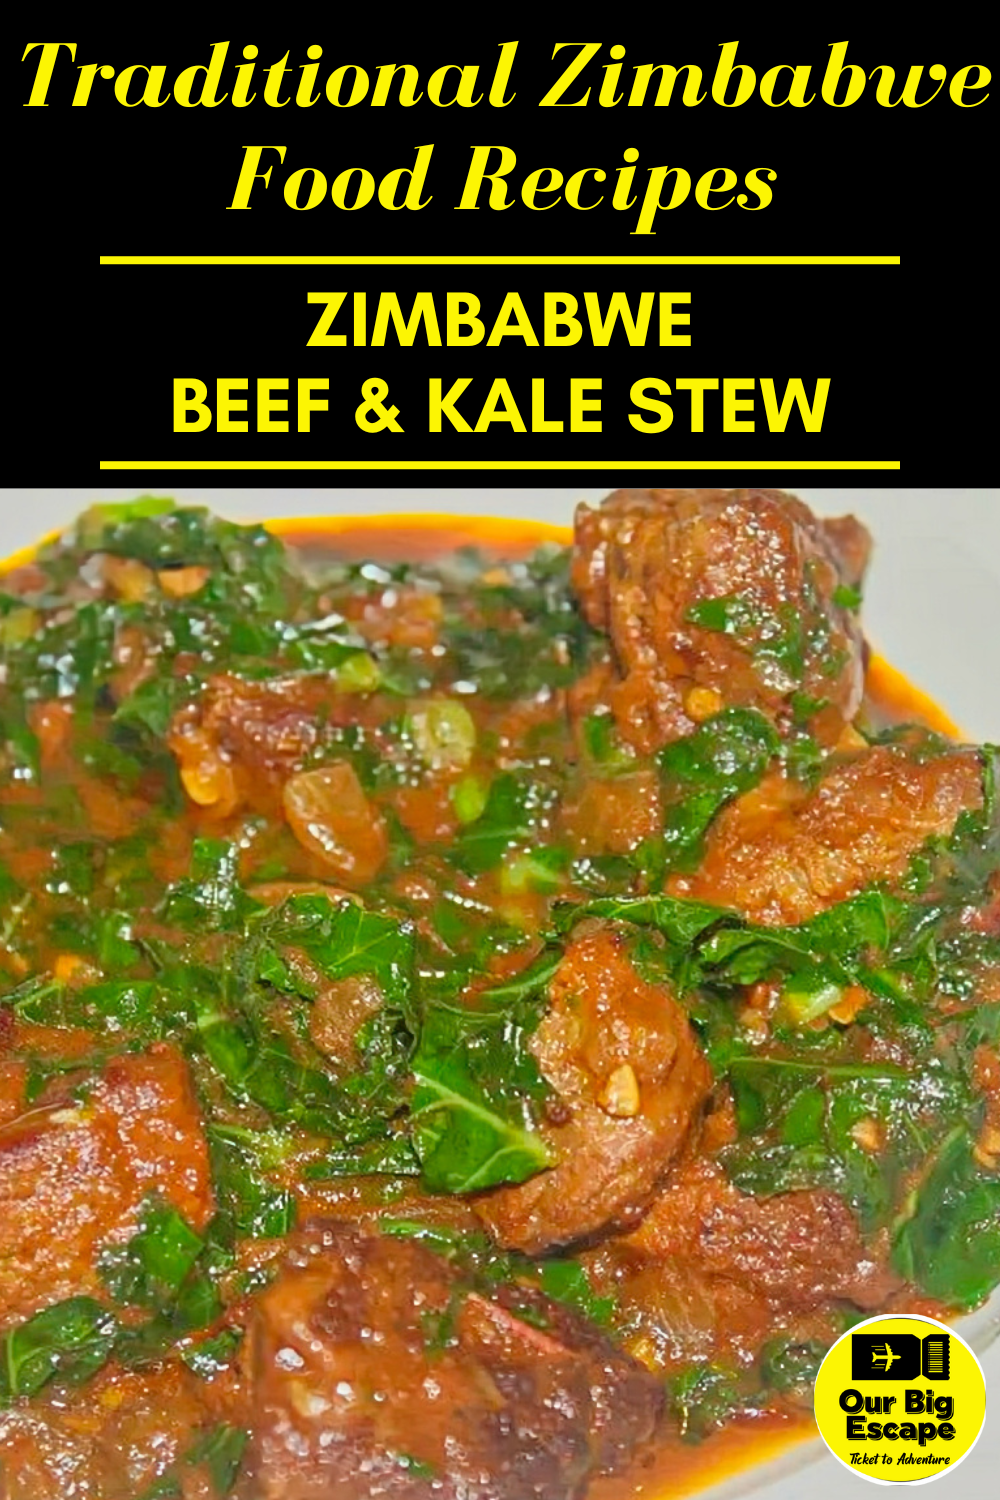 Zimbabwe Food Recipes